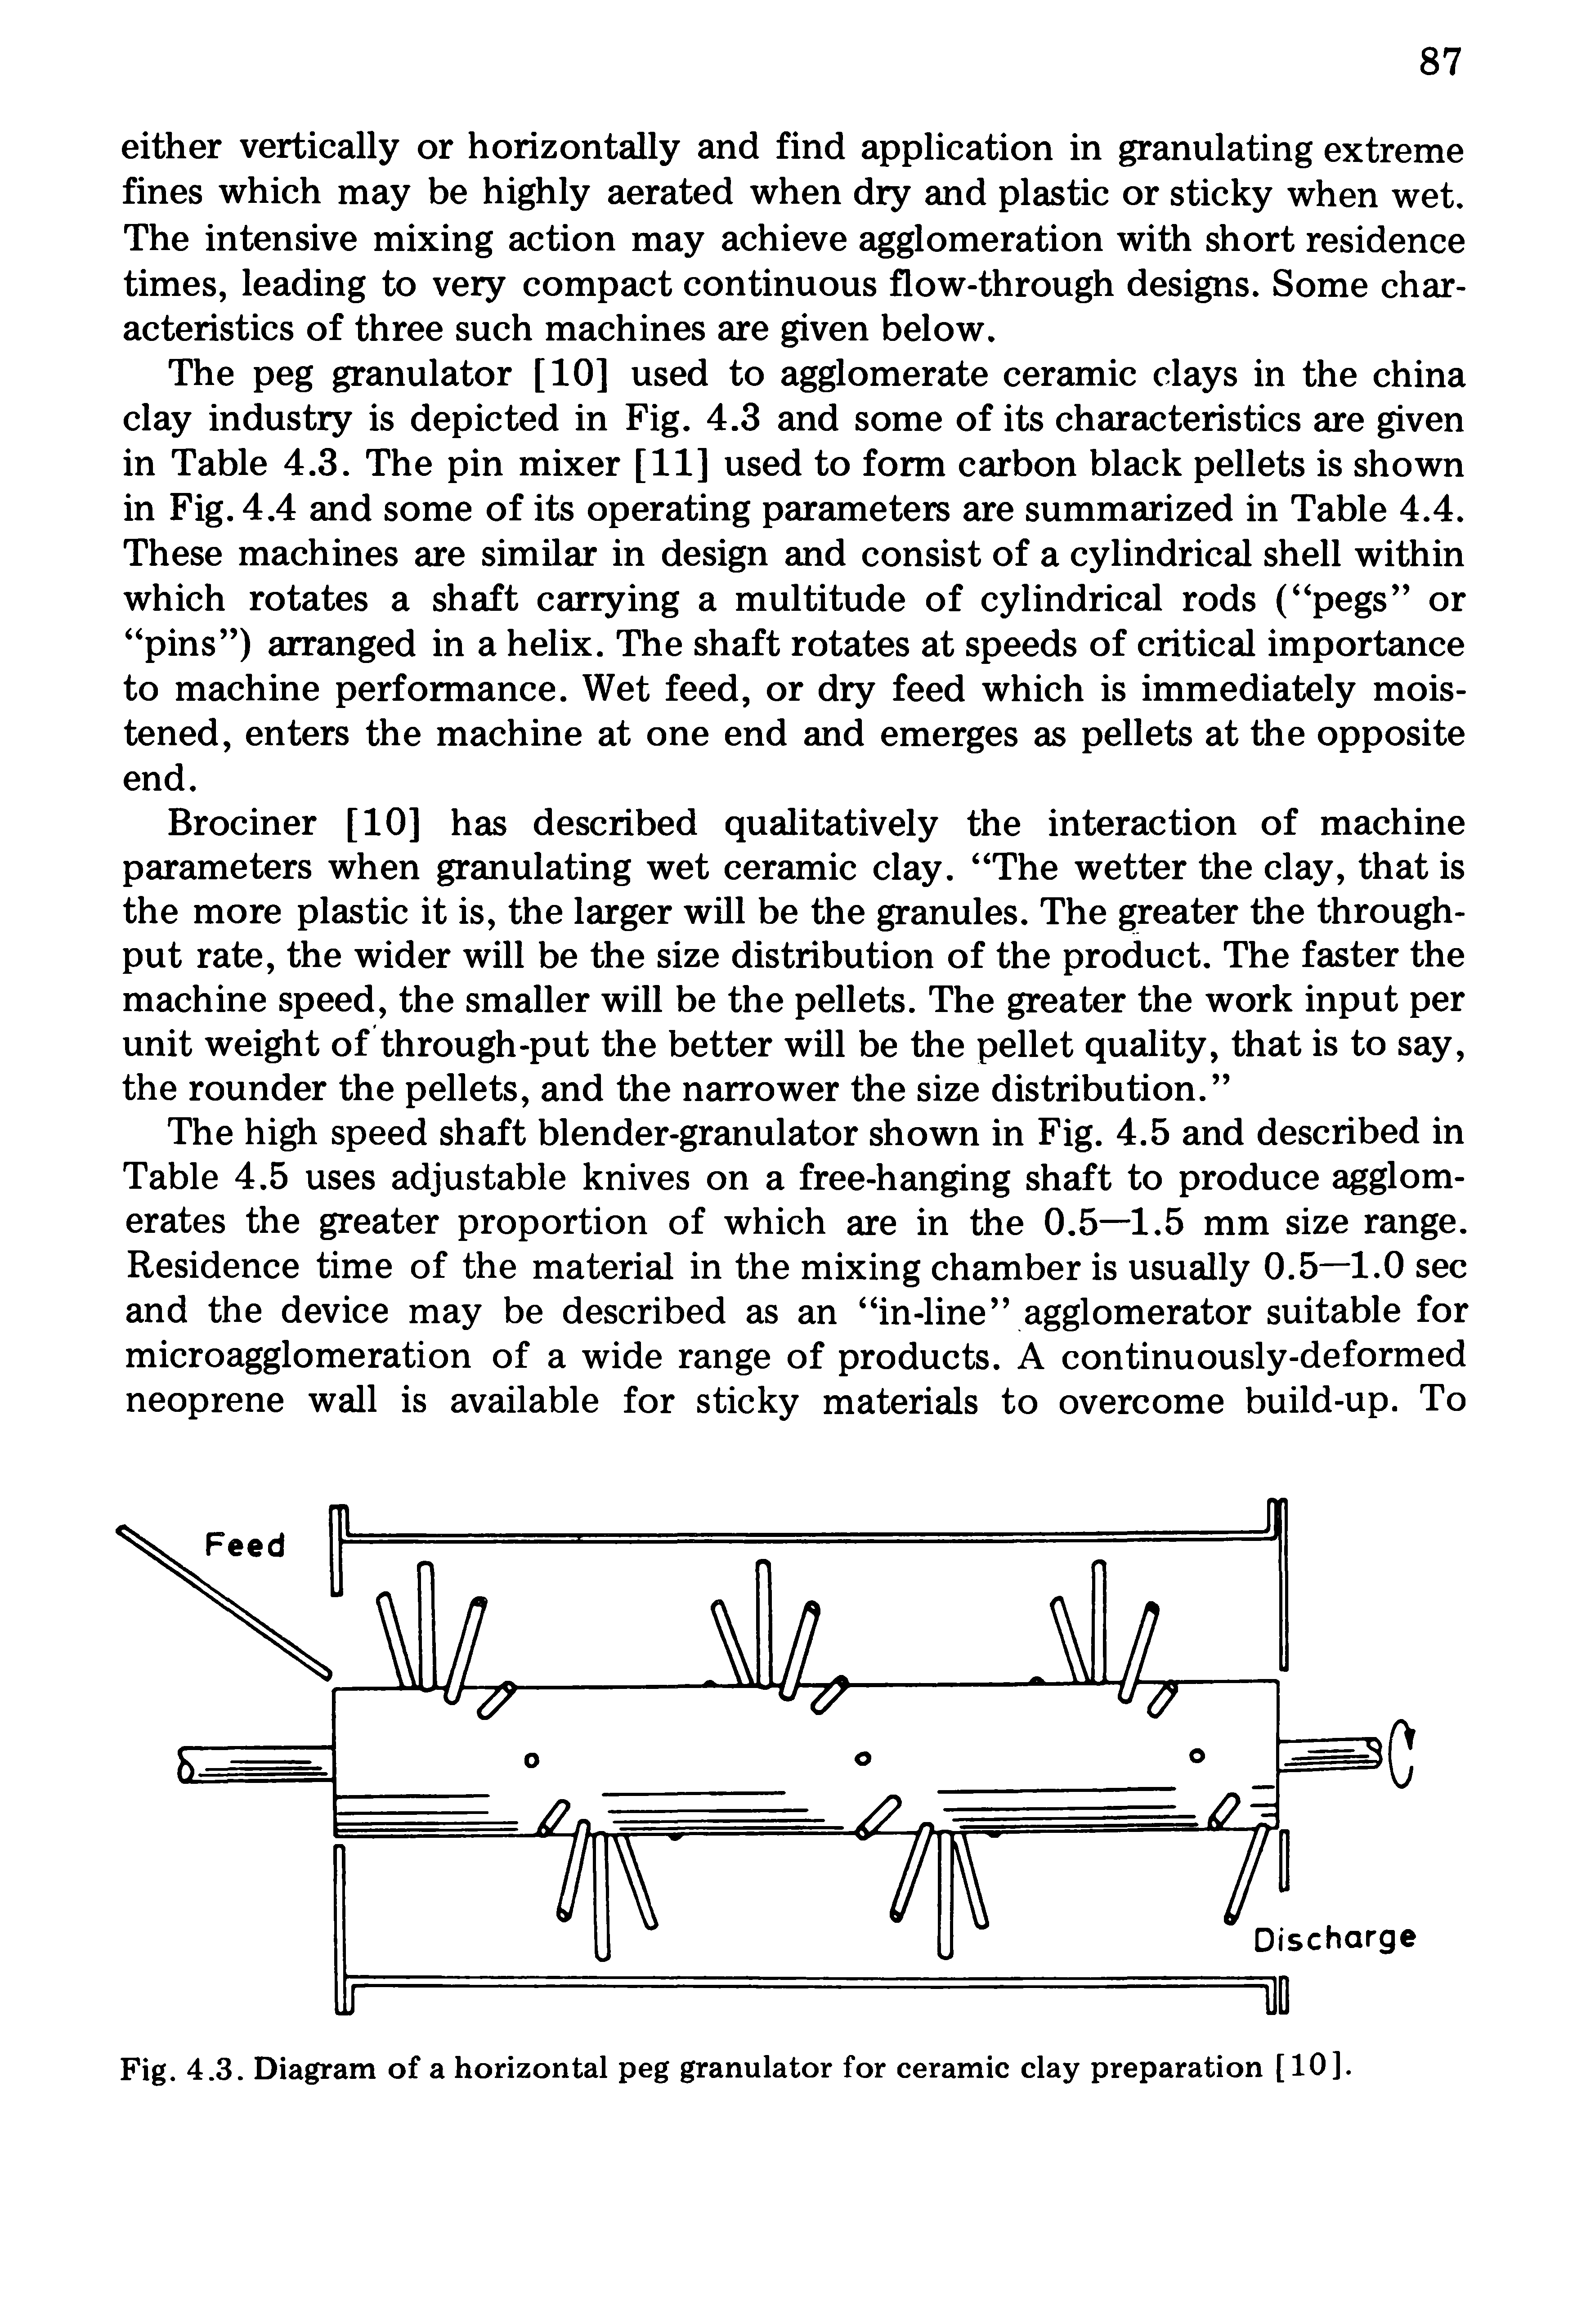 Fig. 4.3. Diagram of a horizontal peg granulator for ceramic clay preparation [10].